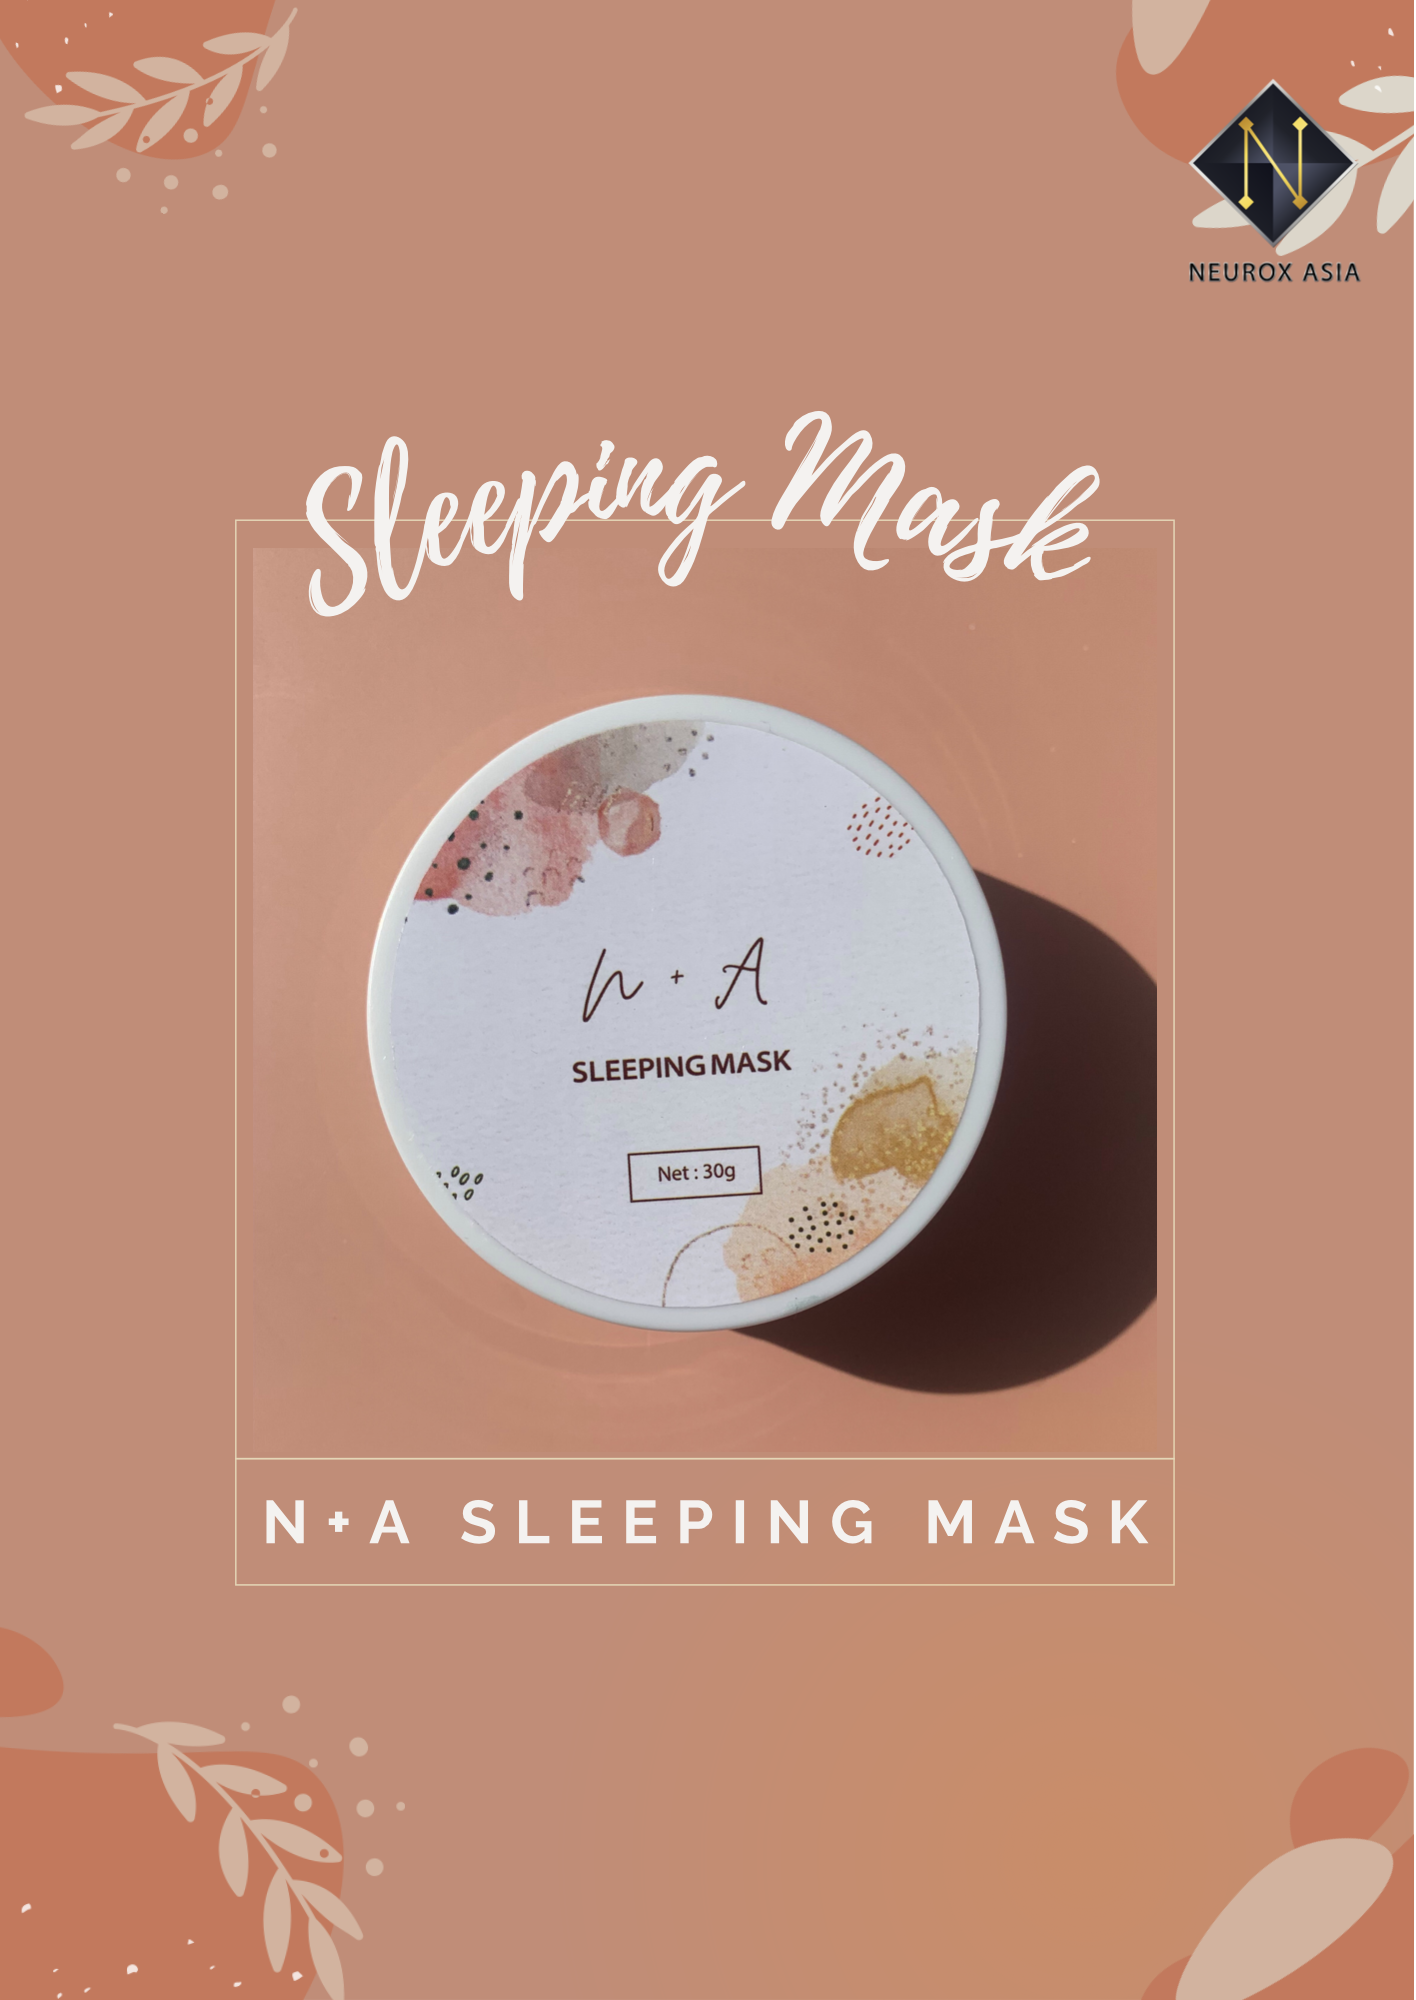 Sleeping mask